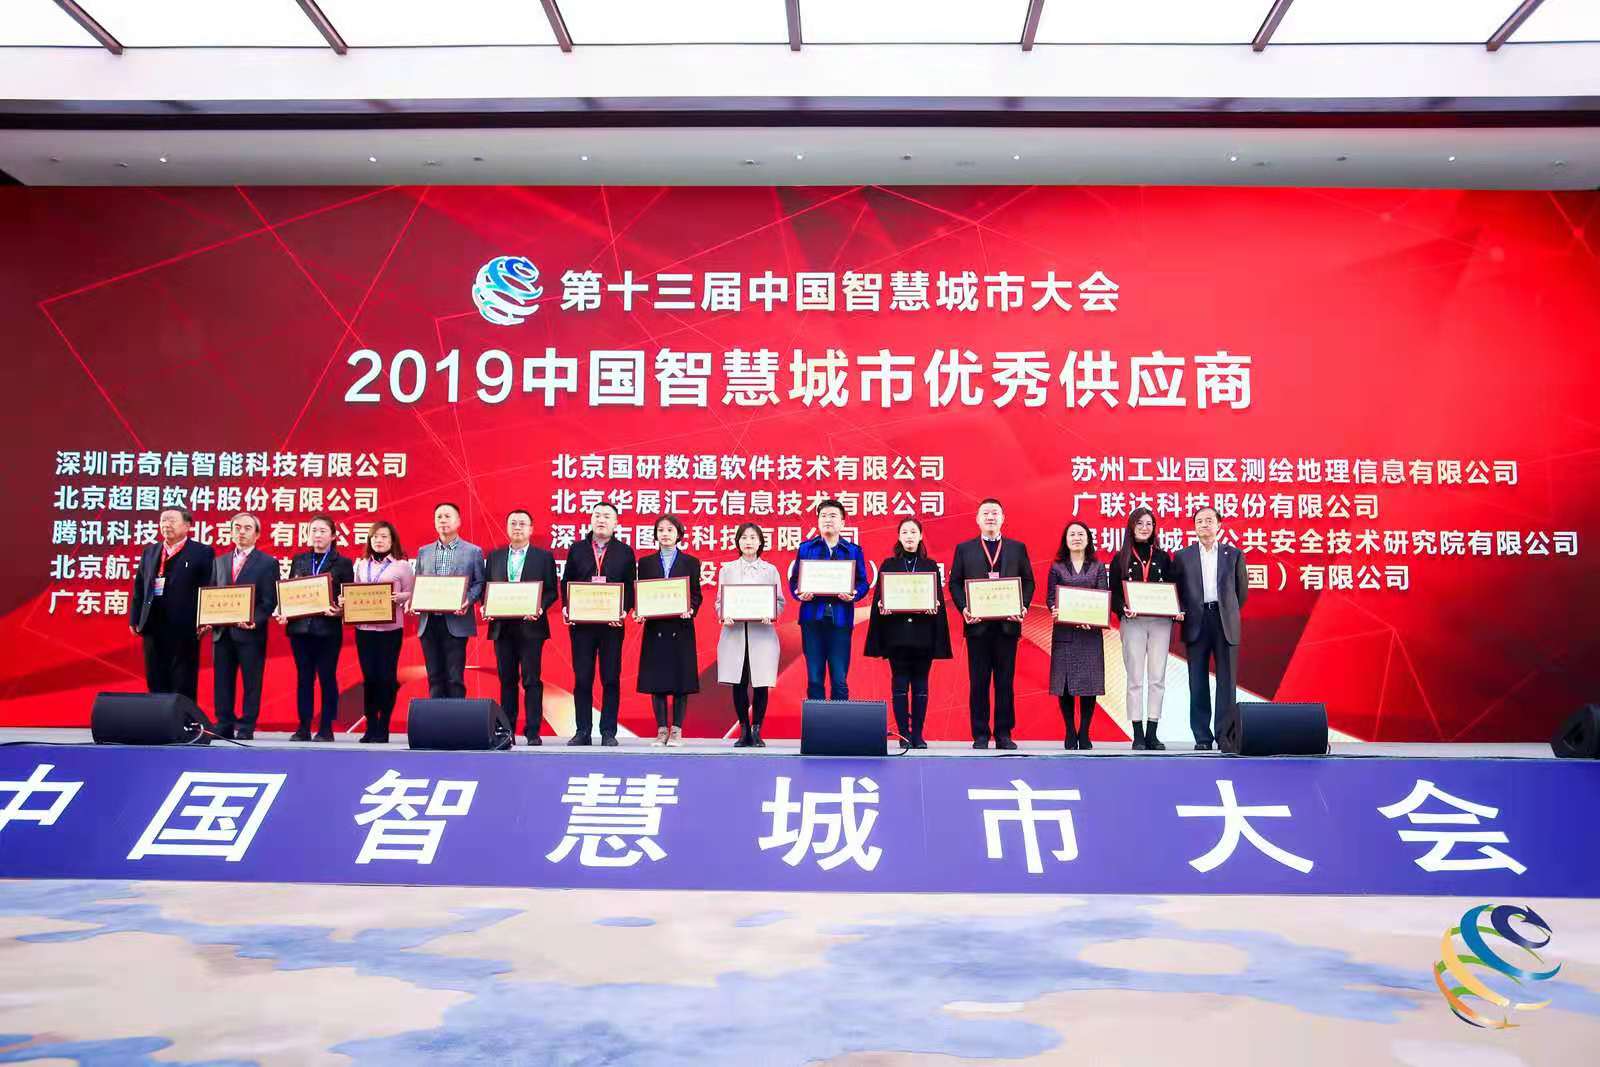 2021第十五届中国智慧城市大会